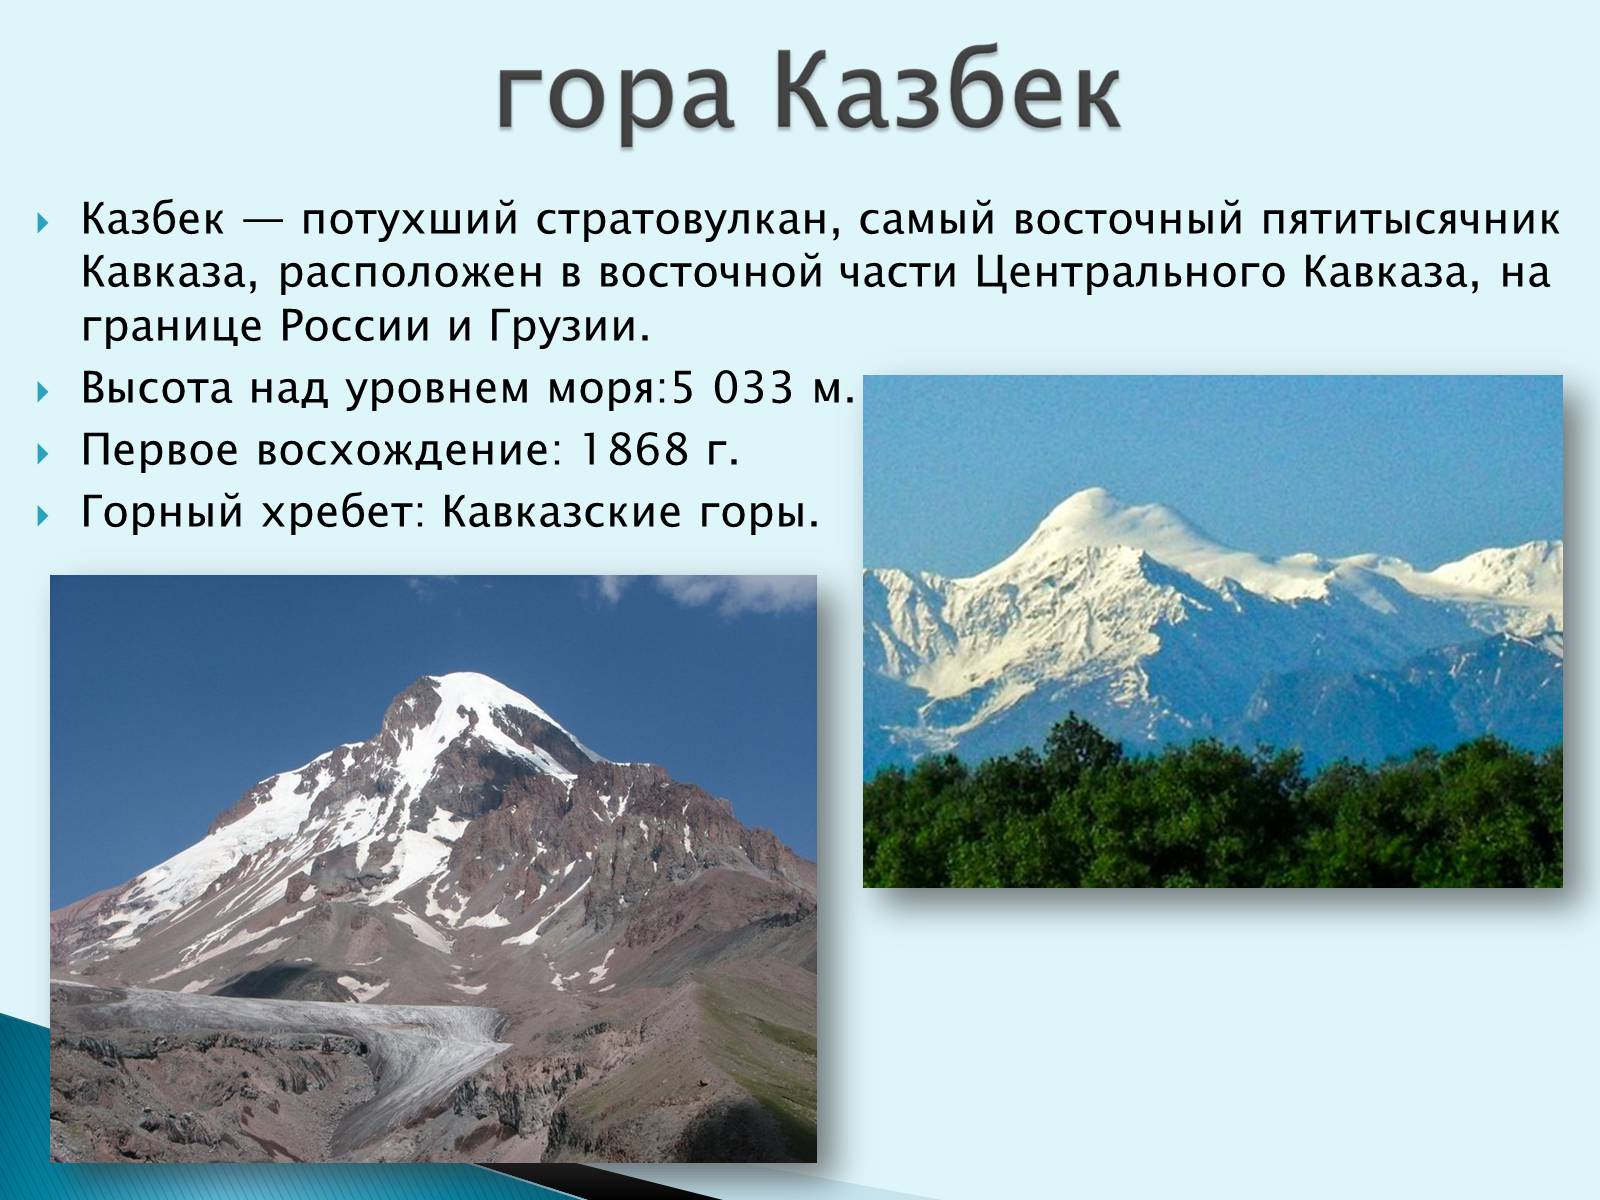 Кавказские горы Казбек описание